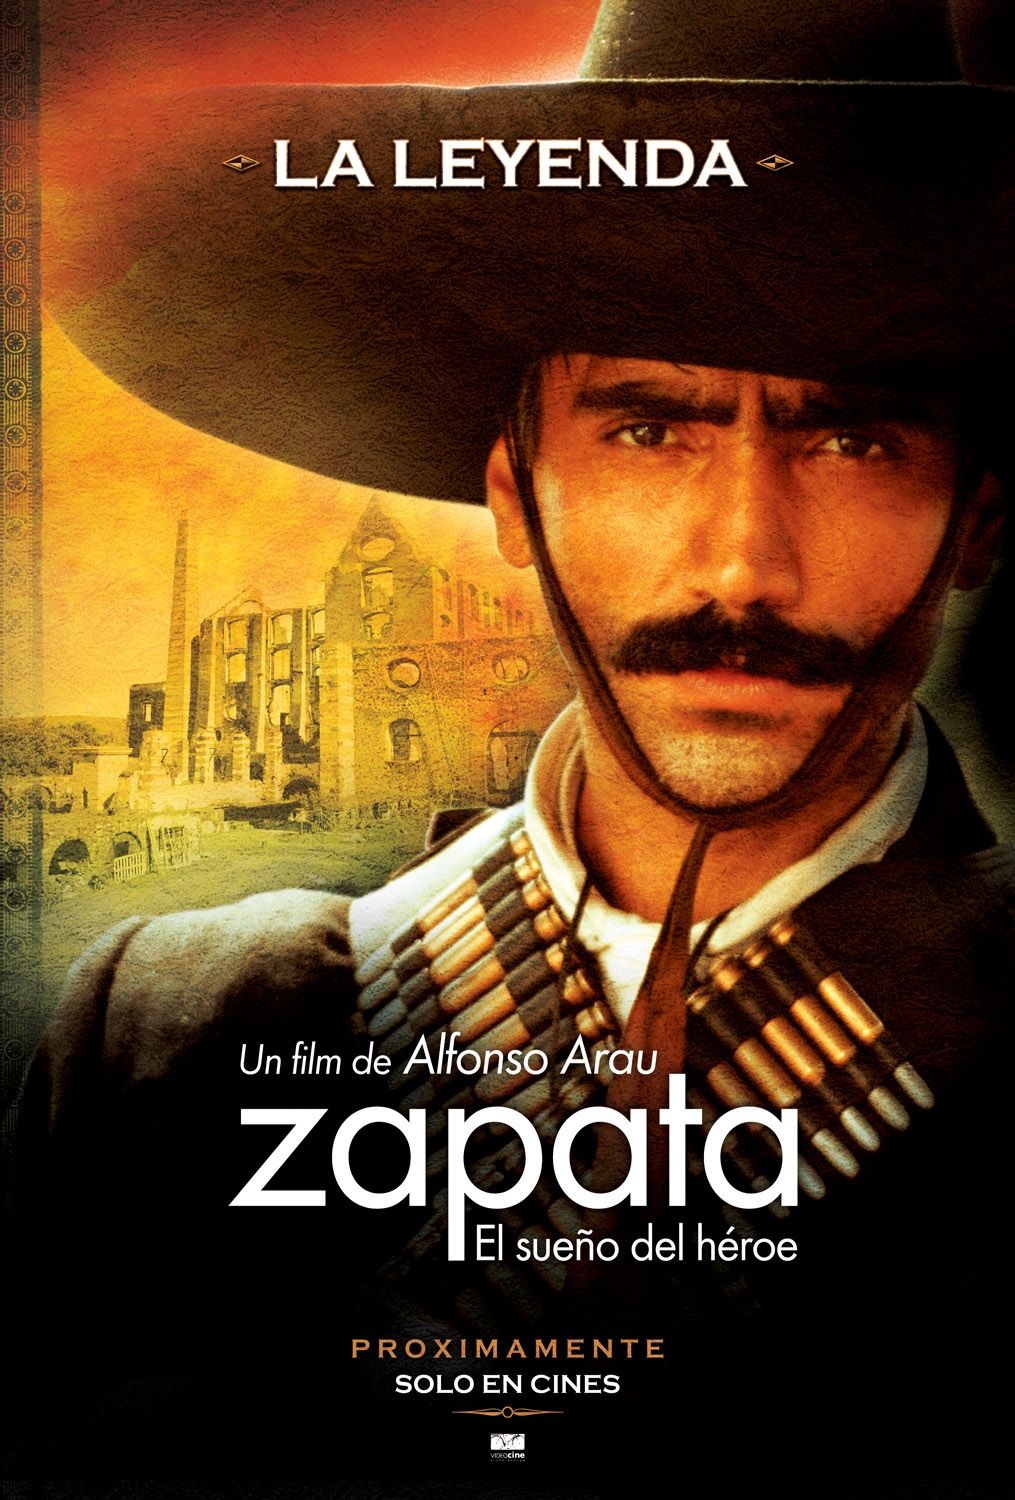 Extra Large Movie Poster Image for Zapata - El sueño del héroe (#1 of 6)